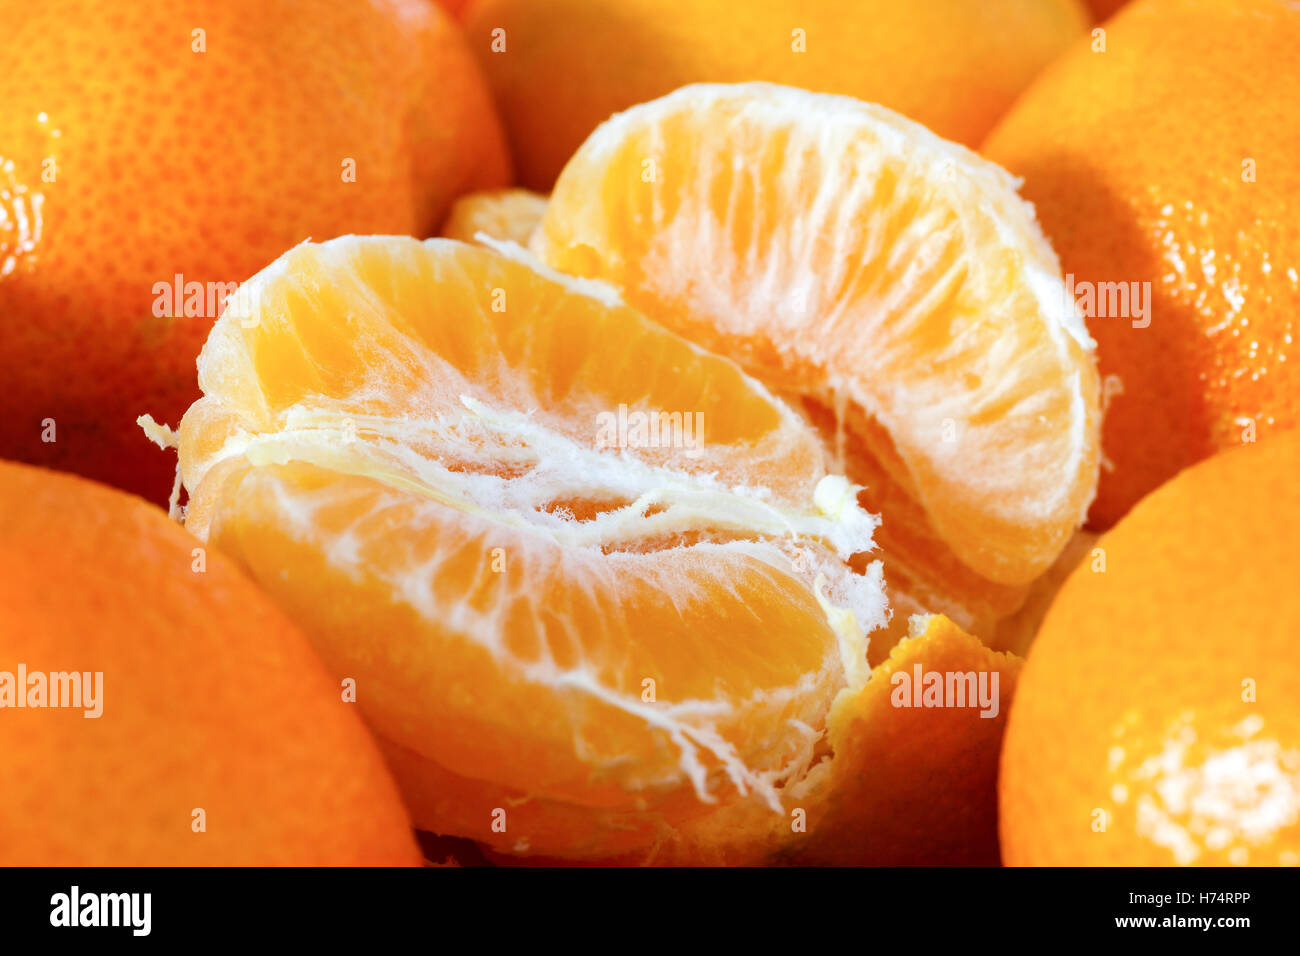 Halb geschälte Mandarine umgeben von ungeschälten Mandarinen Stockfoto